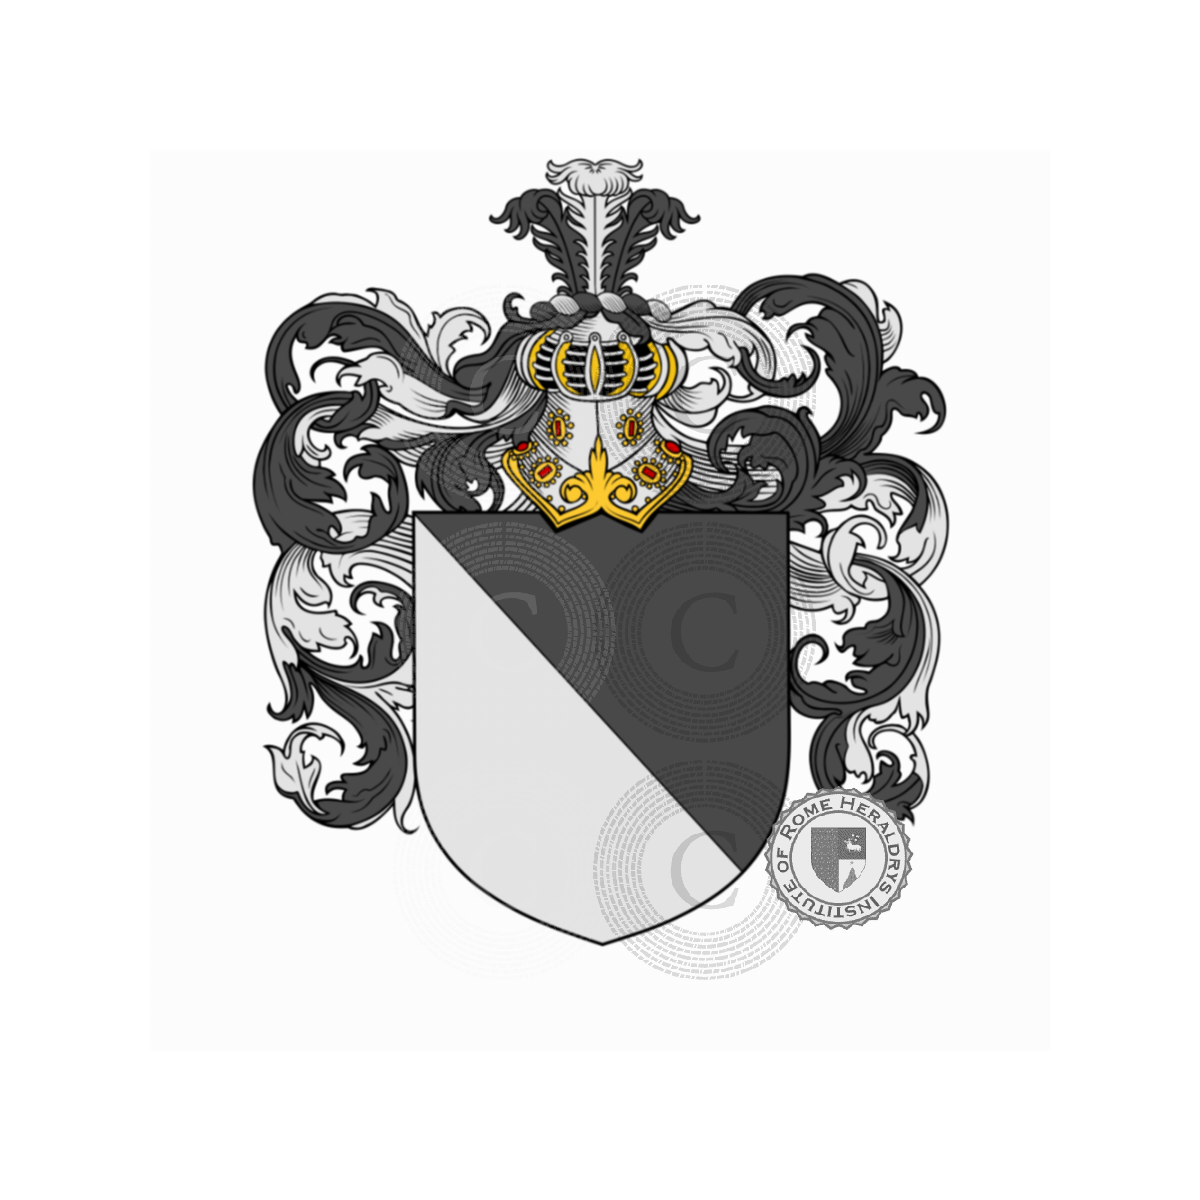 Wappen der FamilieVettori, Rettore,Vettorazzi,Vettore,Vettori del Drago